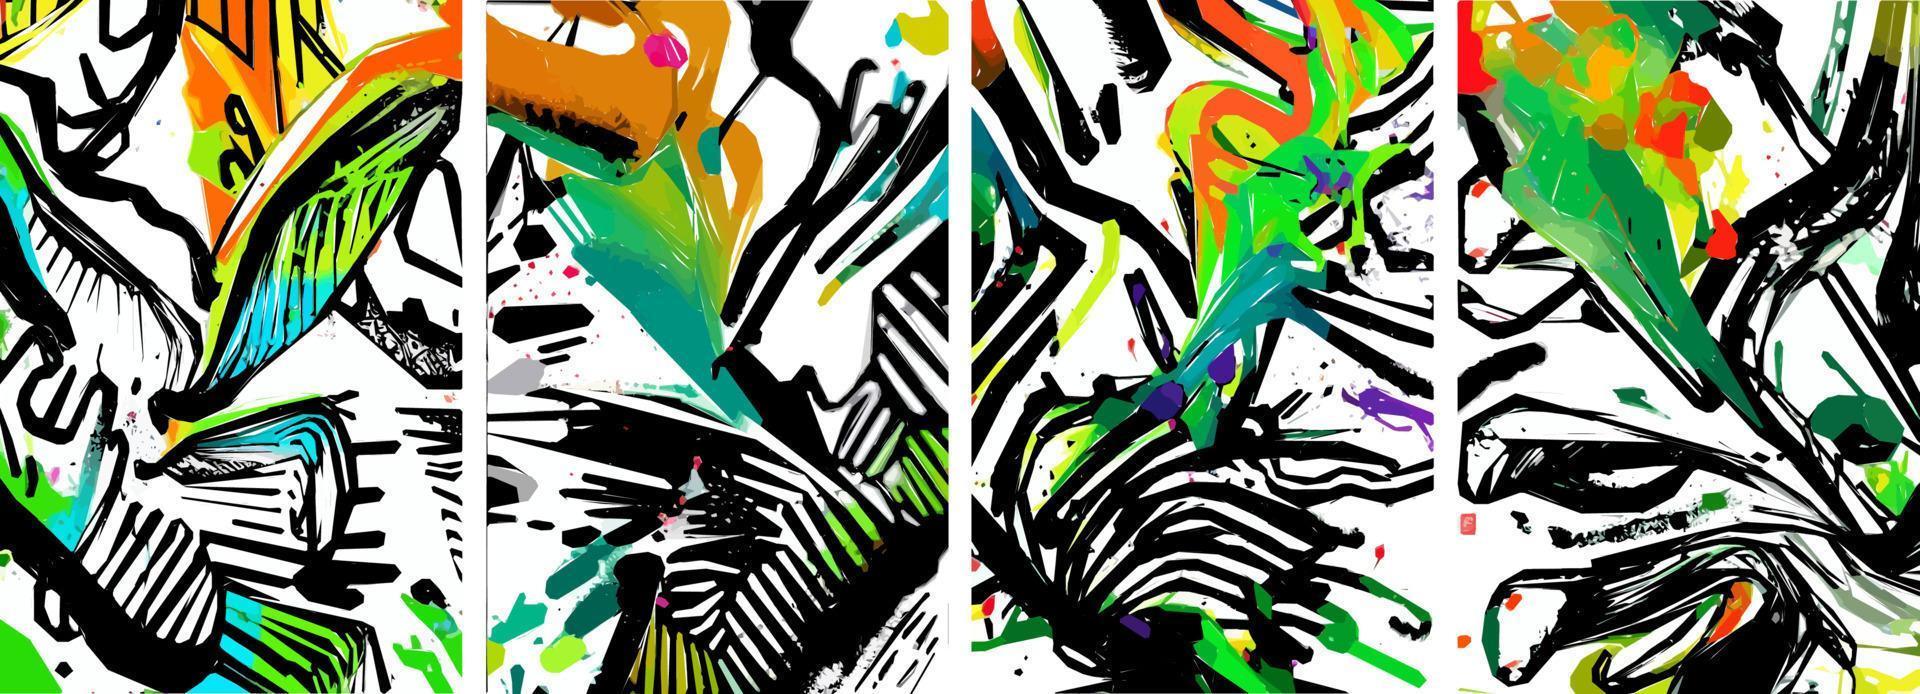 conjunto de mão desenhada fundo de natureza abstrata. vetor tinta aquarela colorida doodle tropical deixa flores, respingos e formas, fundo para papel, capa, tecido, decoração de interiores.